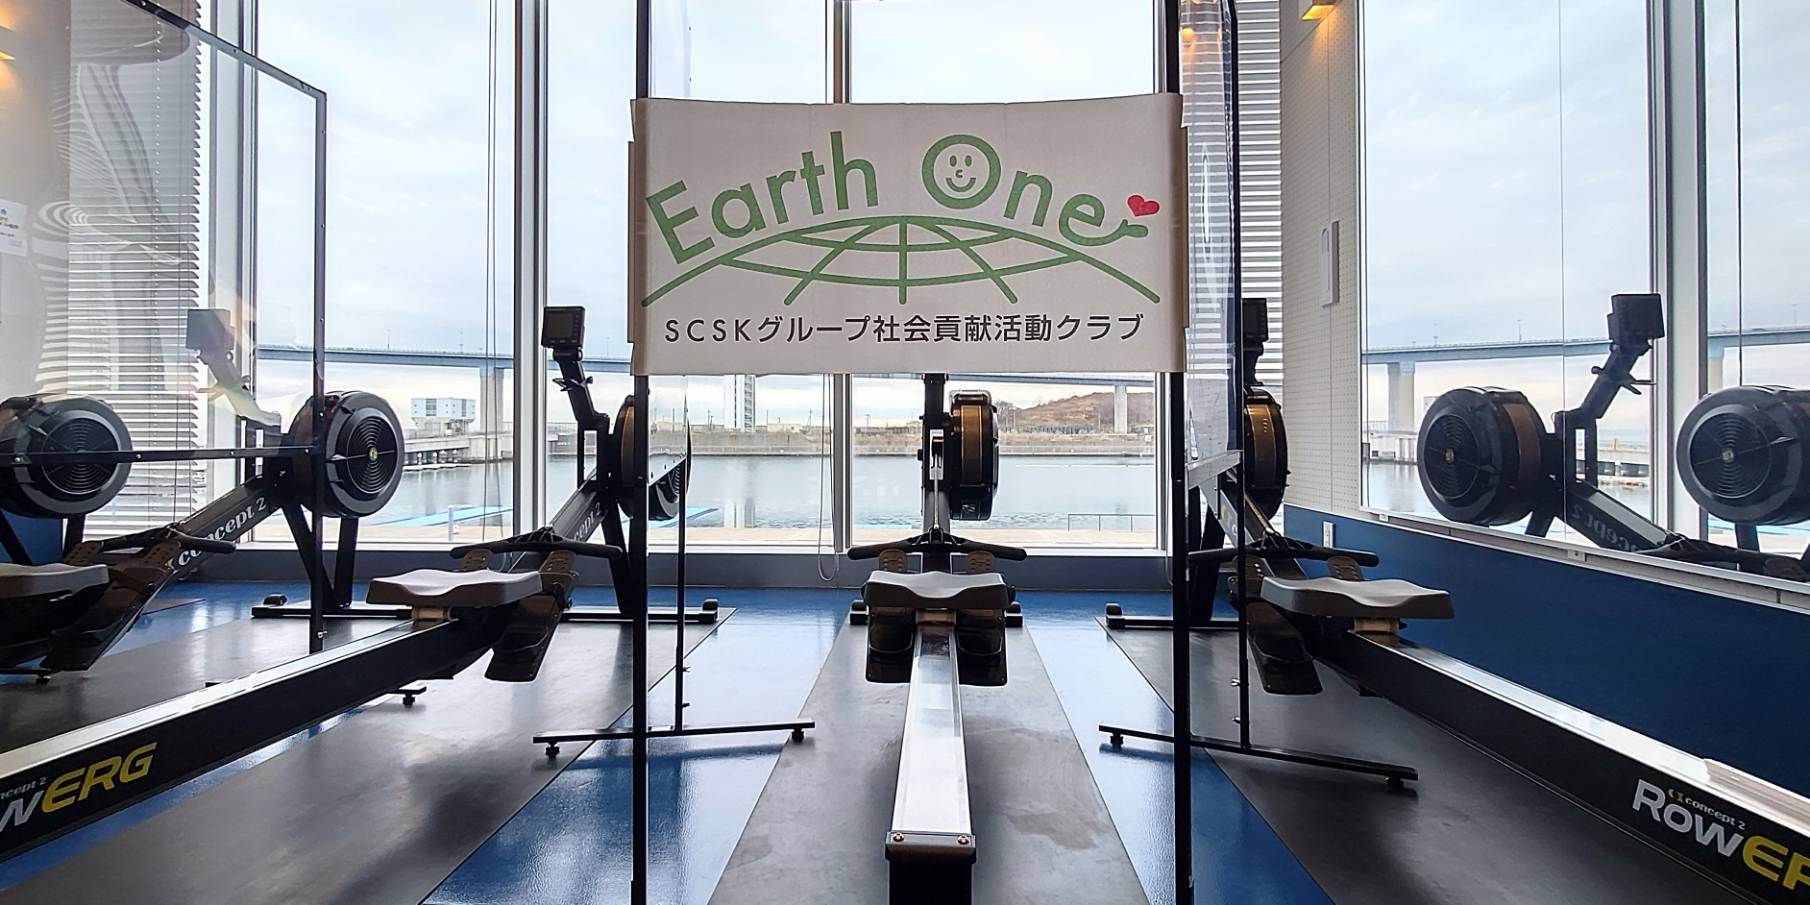 【参加チーム紹介】SCSK Earth One